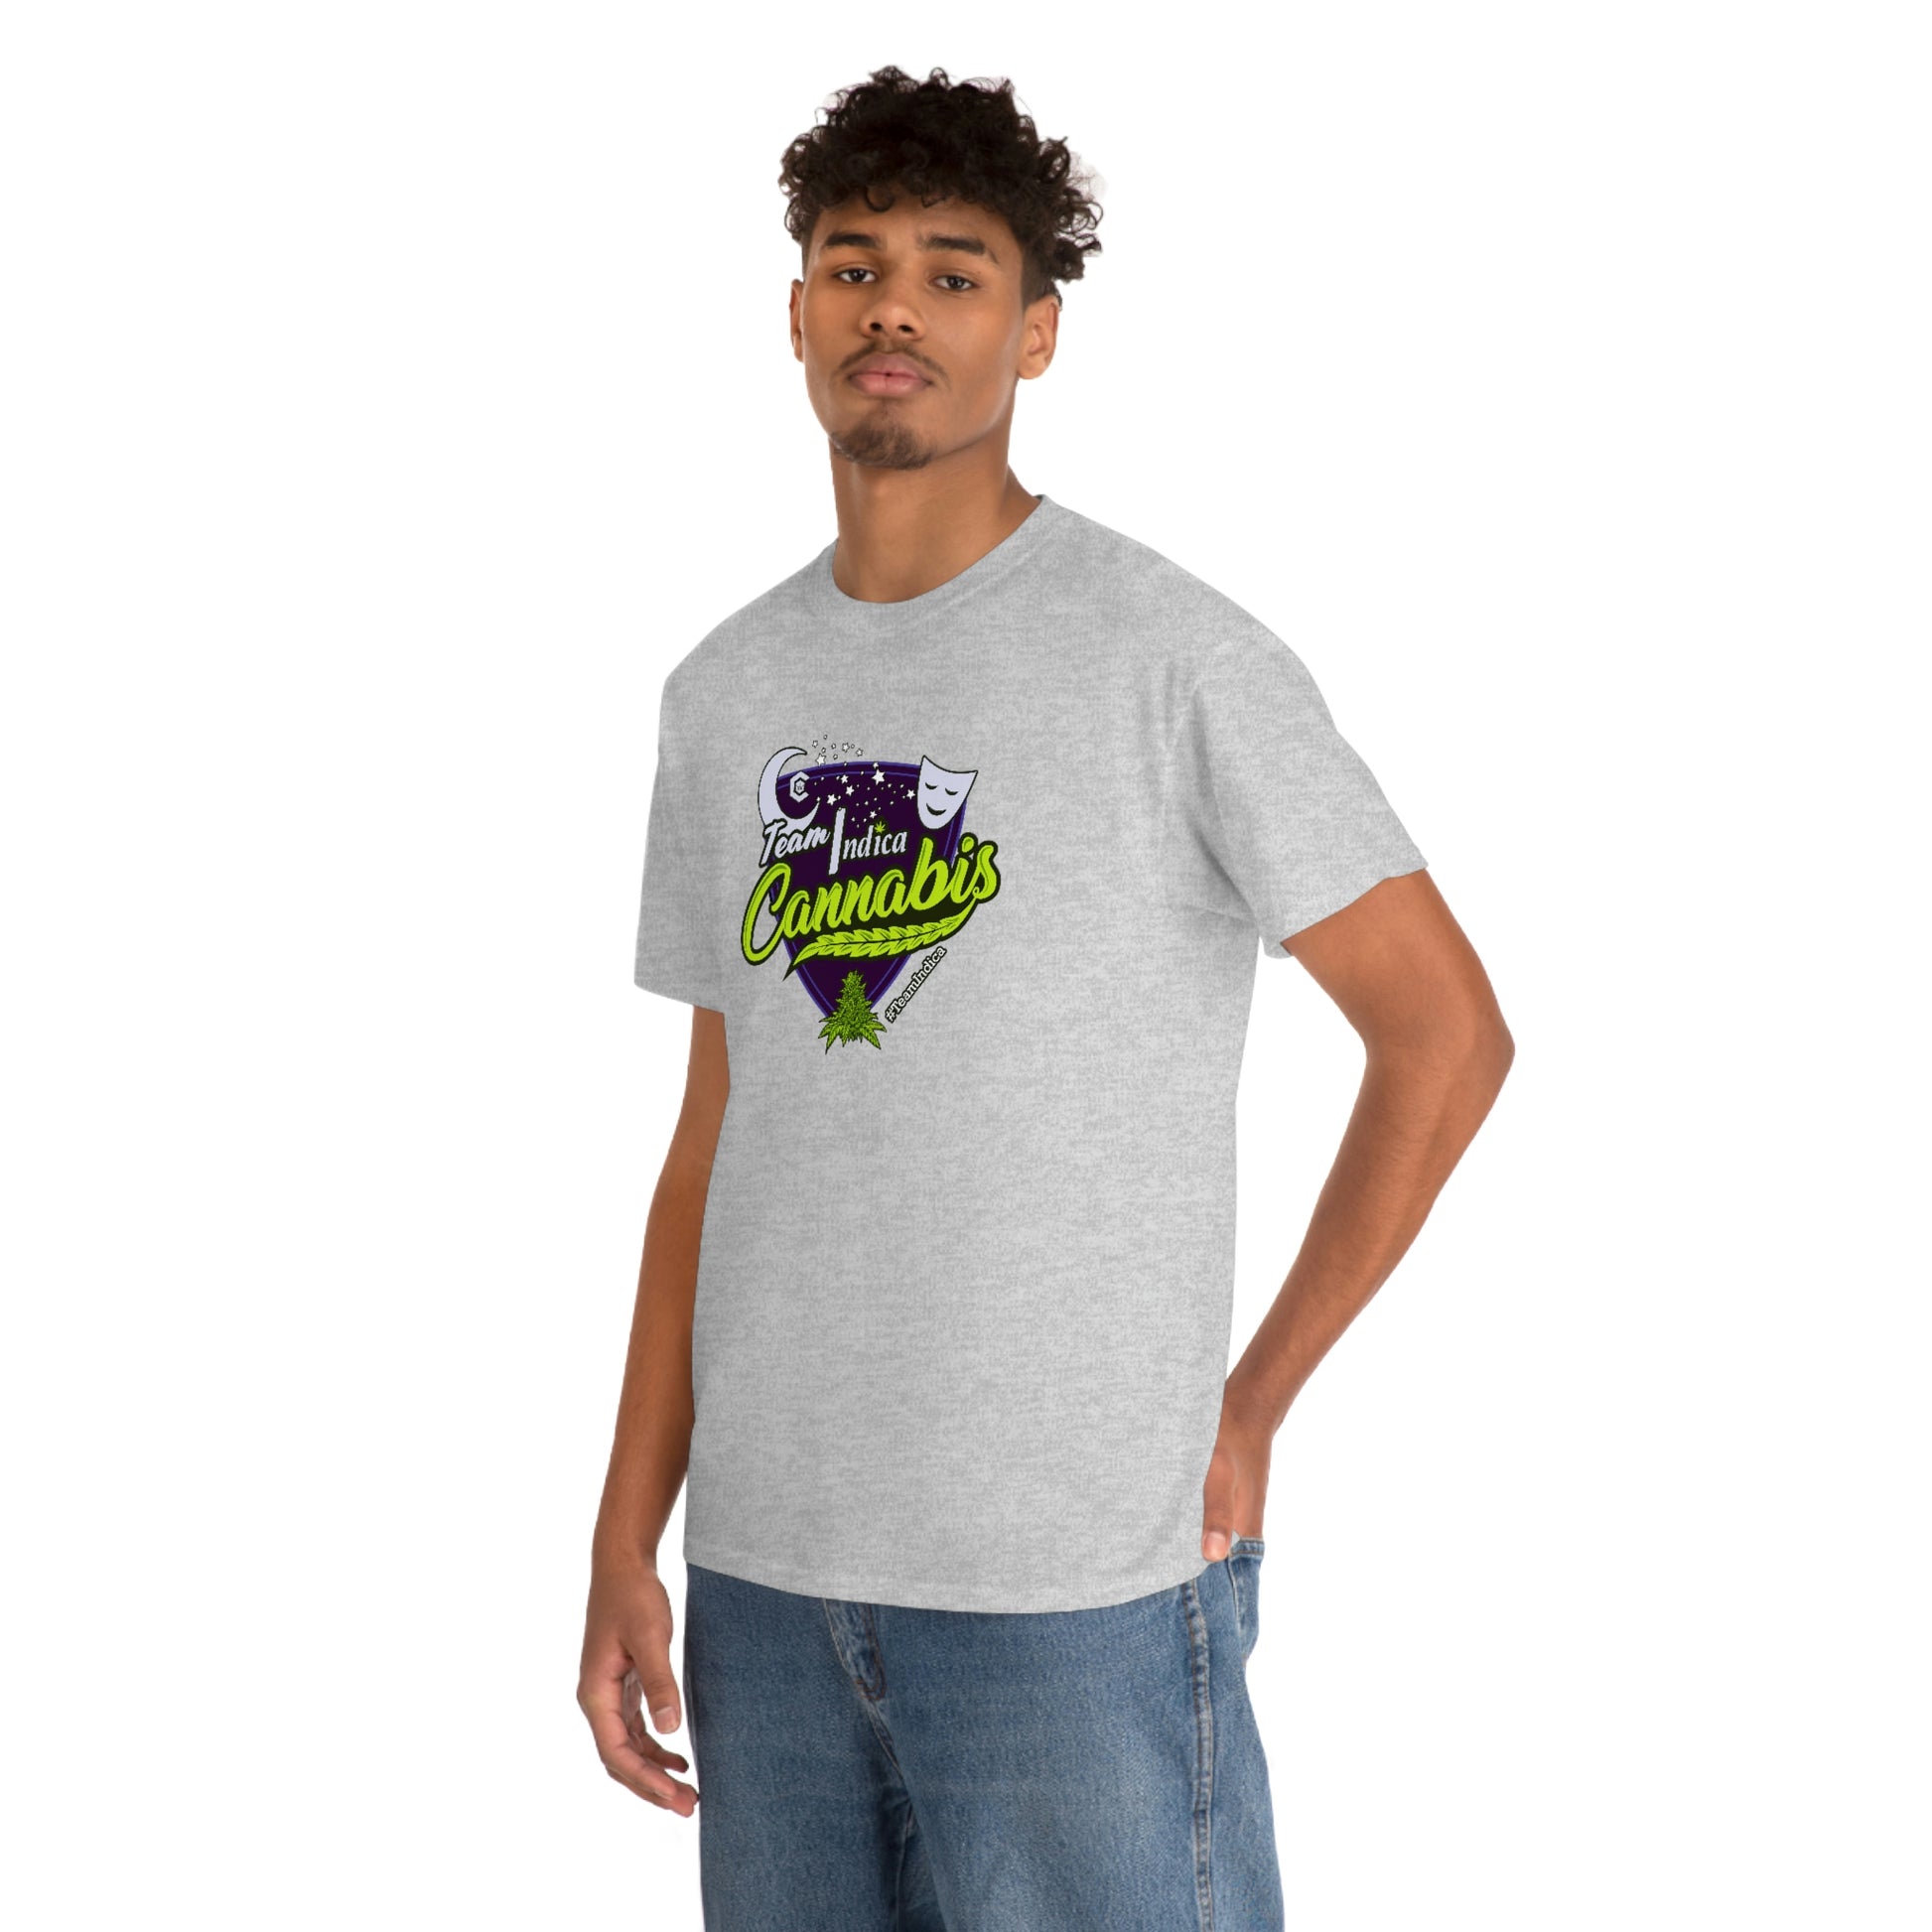 a man wearing a Team Indica Cannabis T-Shirt.